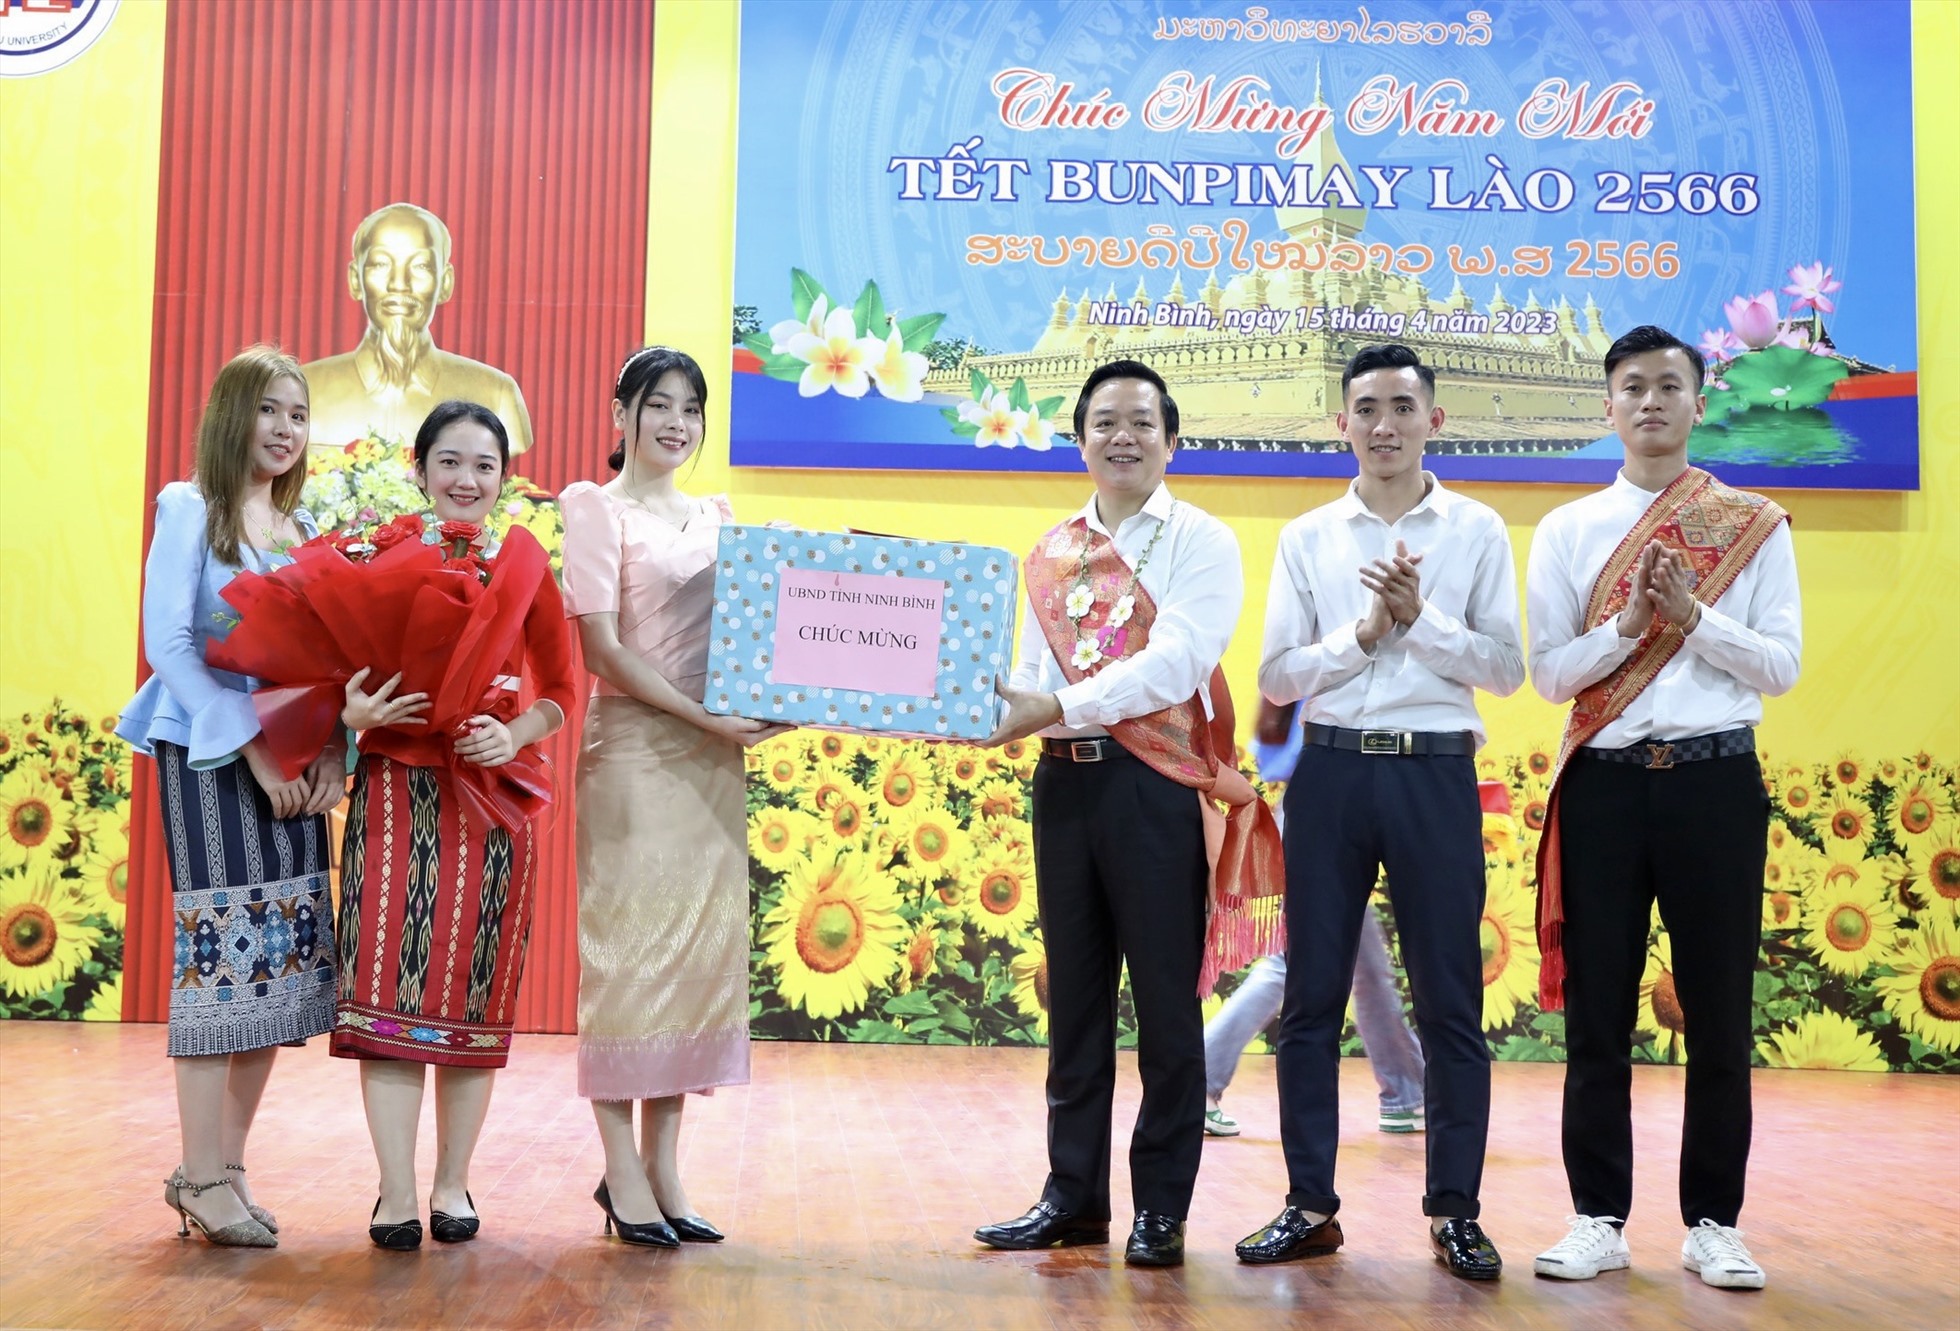 Chủ tịch UBND tỉnh Ninh Bình, Phạm Quang Ngọc tặng quà chúc mừng các em lưu học sinh Lào. ẢnhL Diệu Anh.